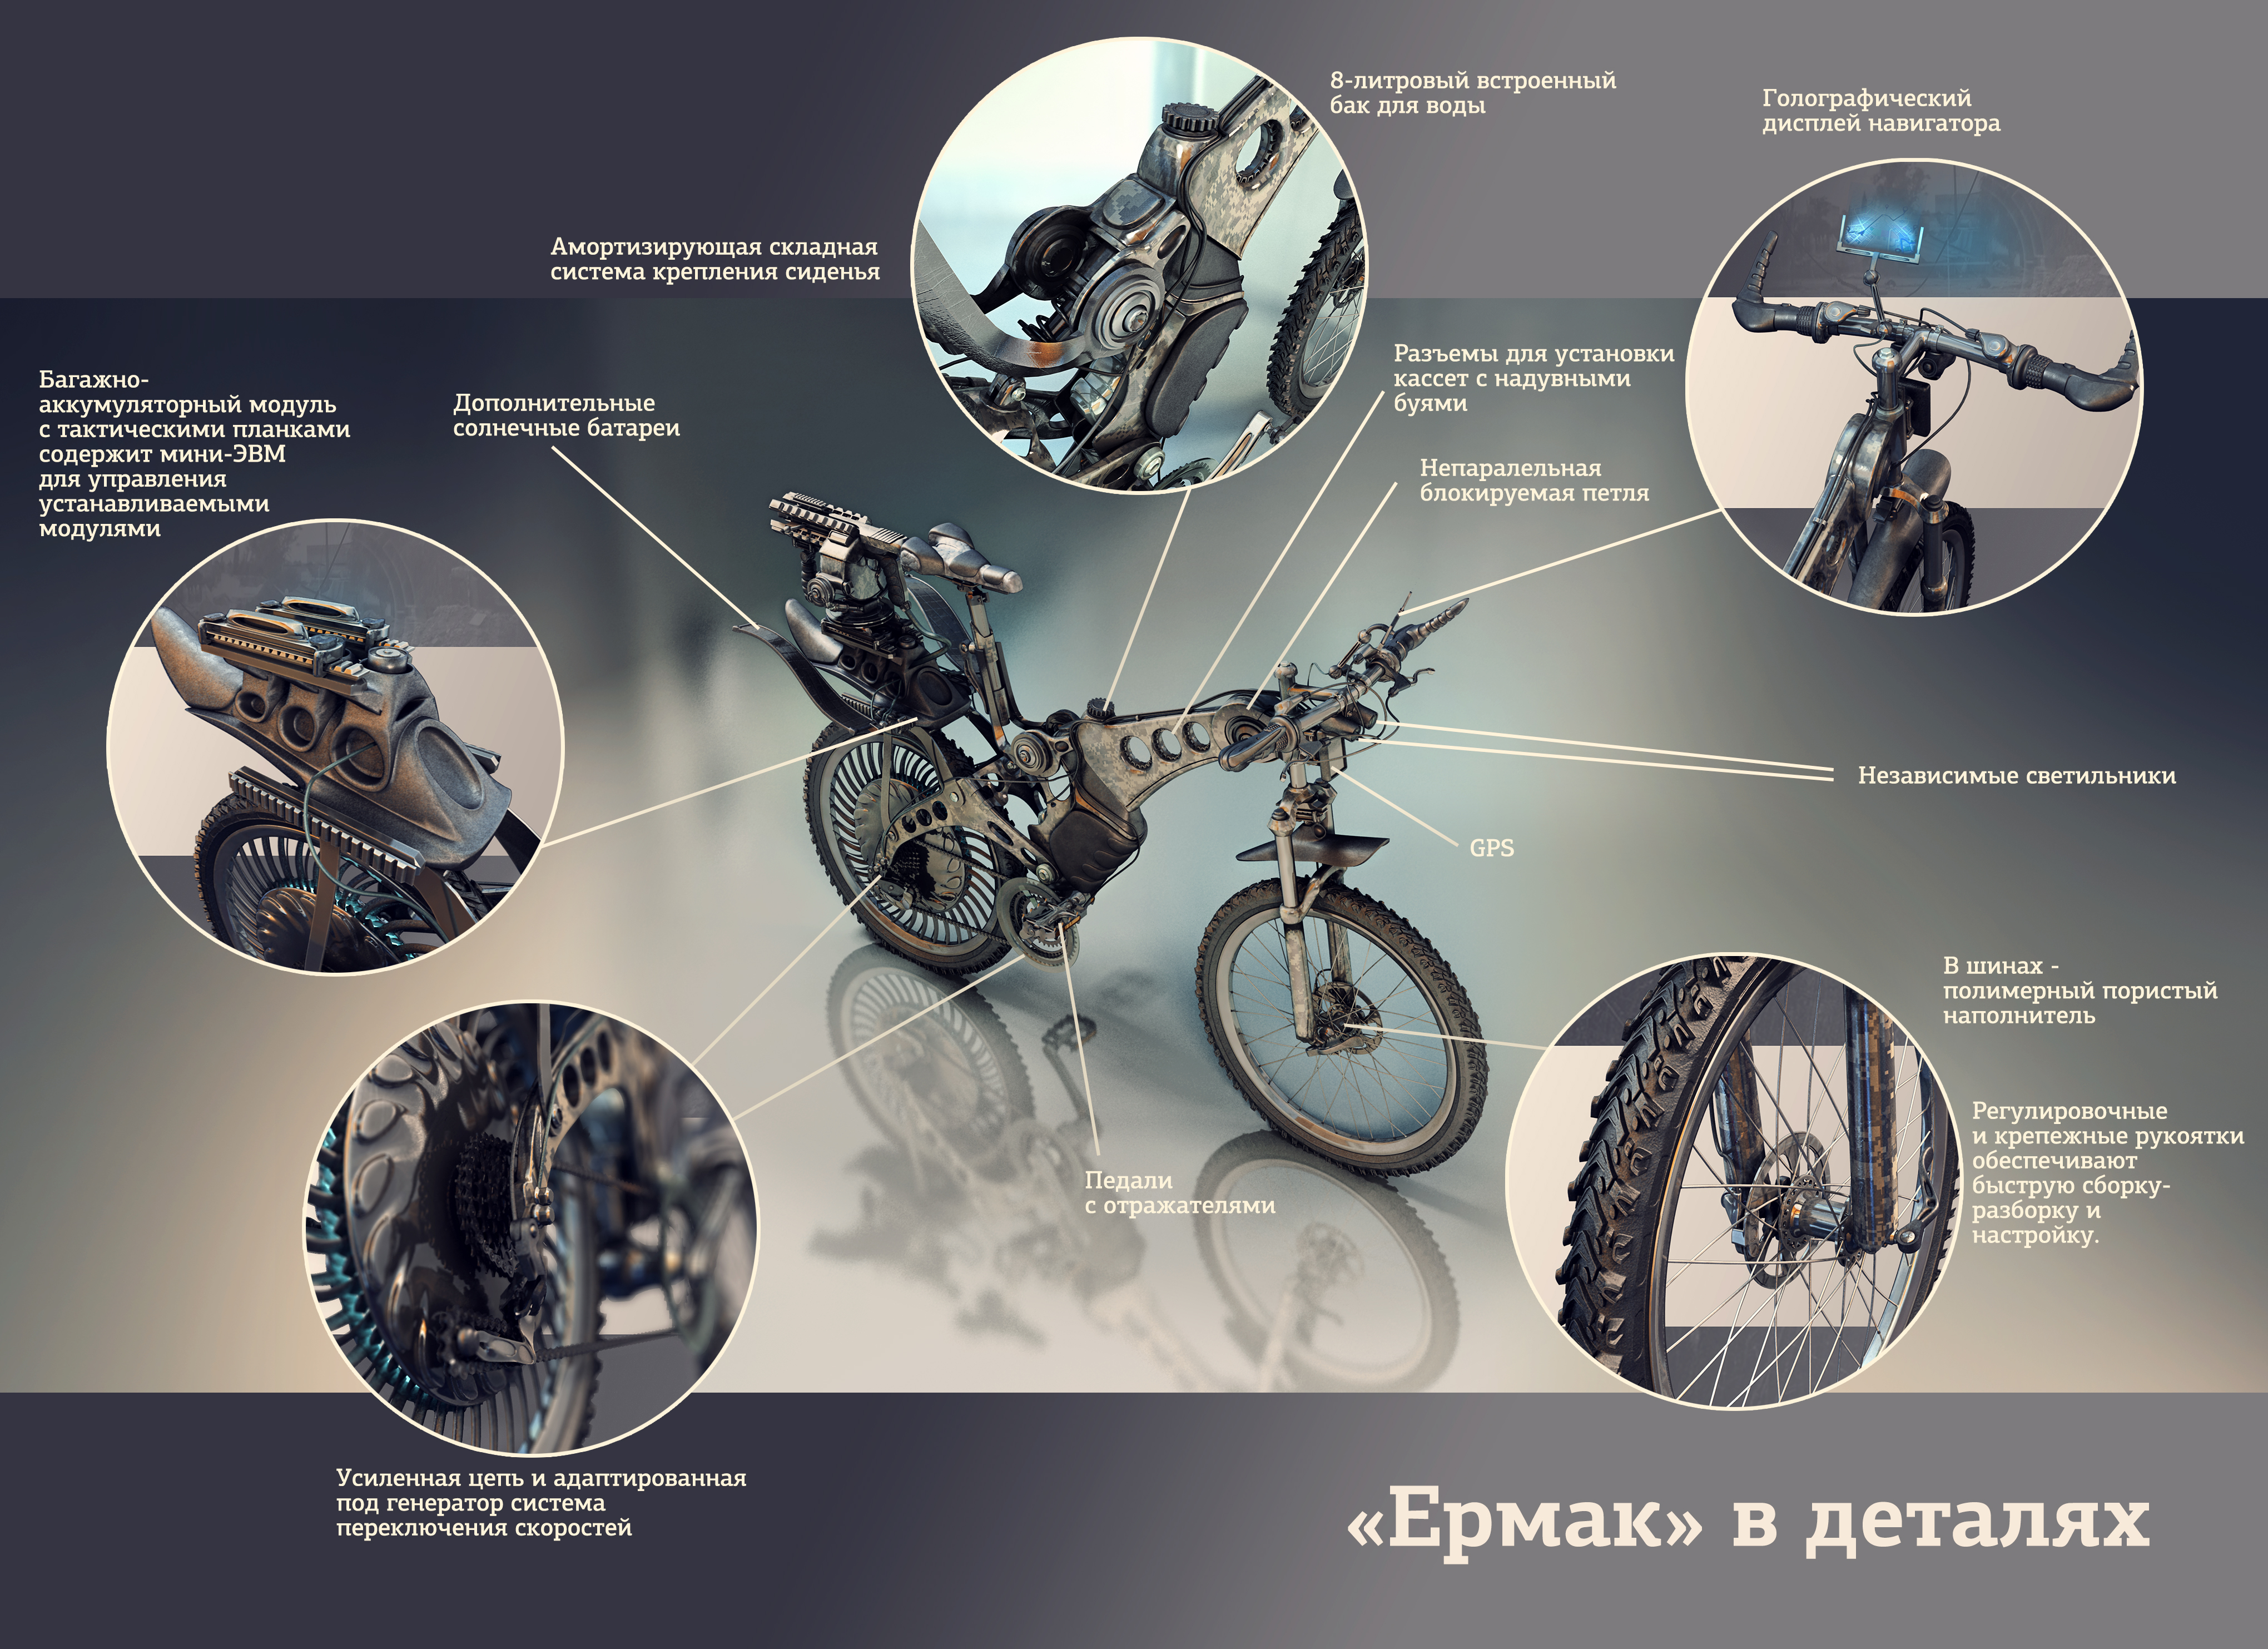 Bike2.jpg